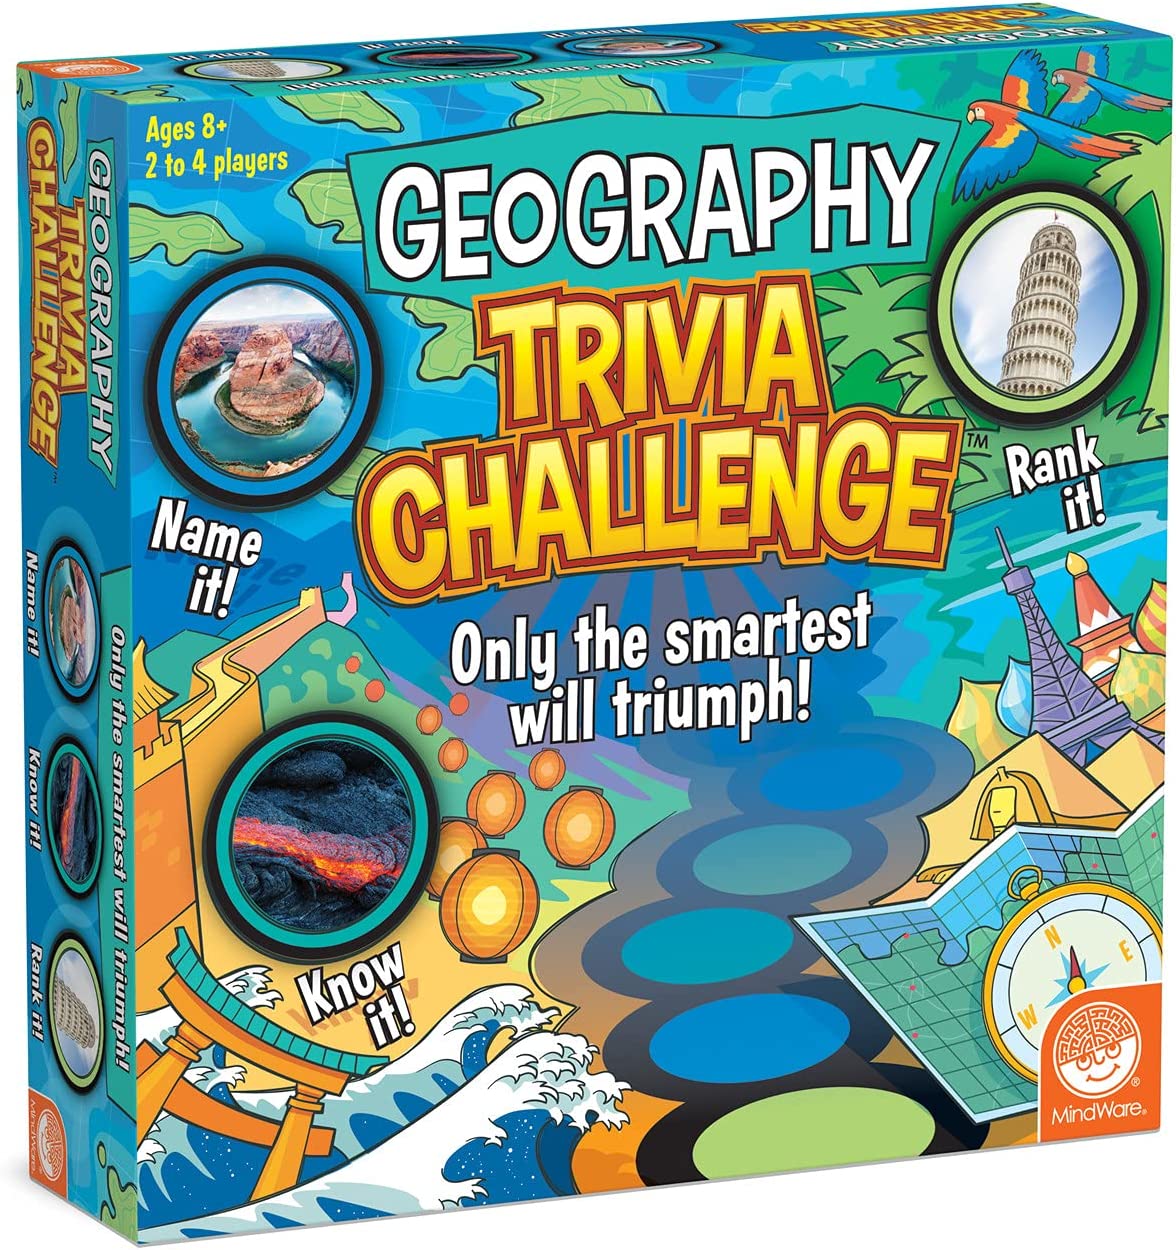 quizchallenge #teste #desafio #conhecimento #quiz #geografia